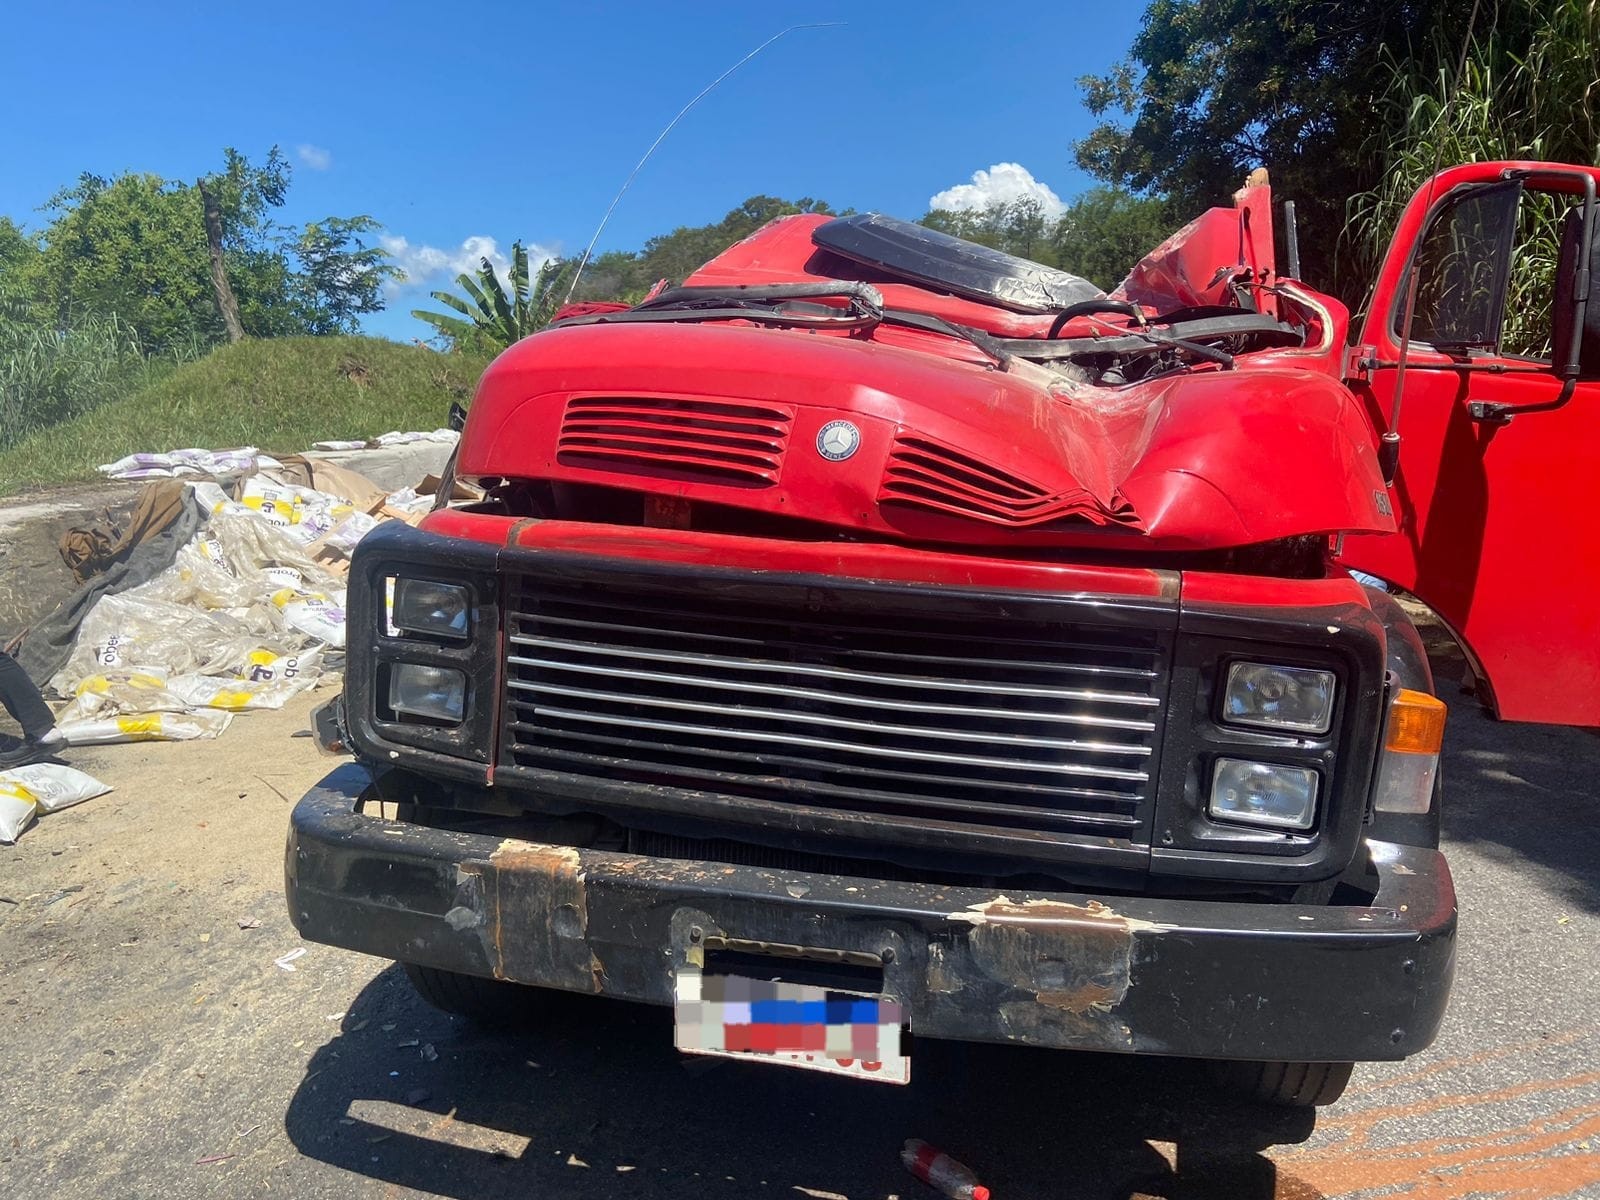 Caminhão que transportava sal tomba na descida da Serra das Araras, em Piraí